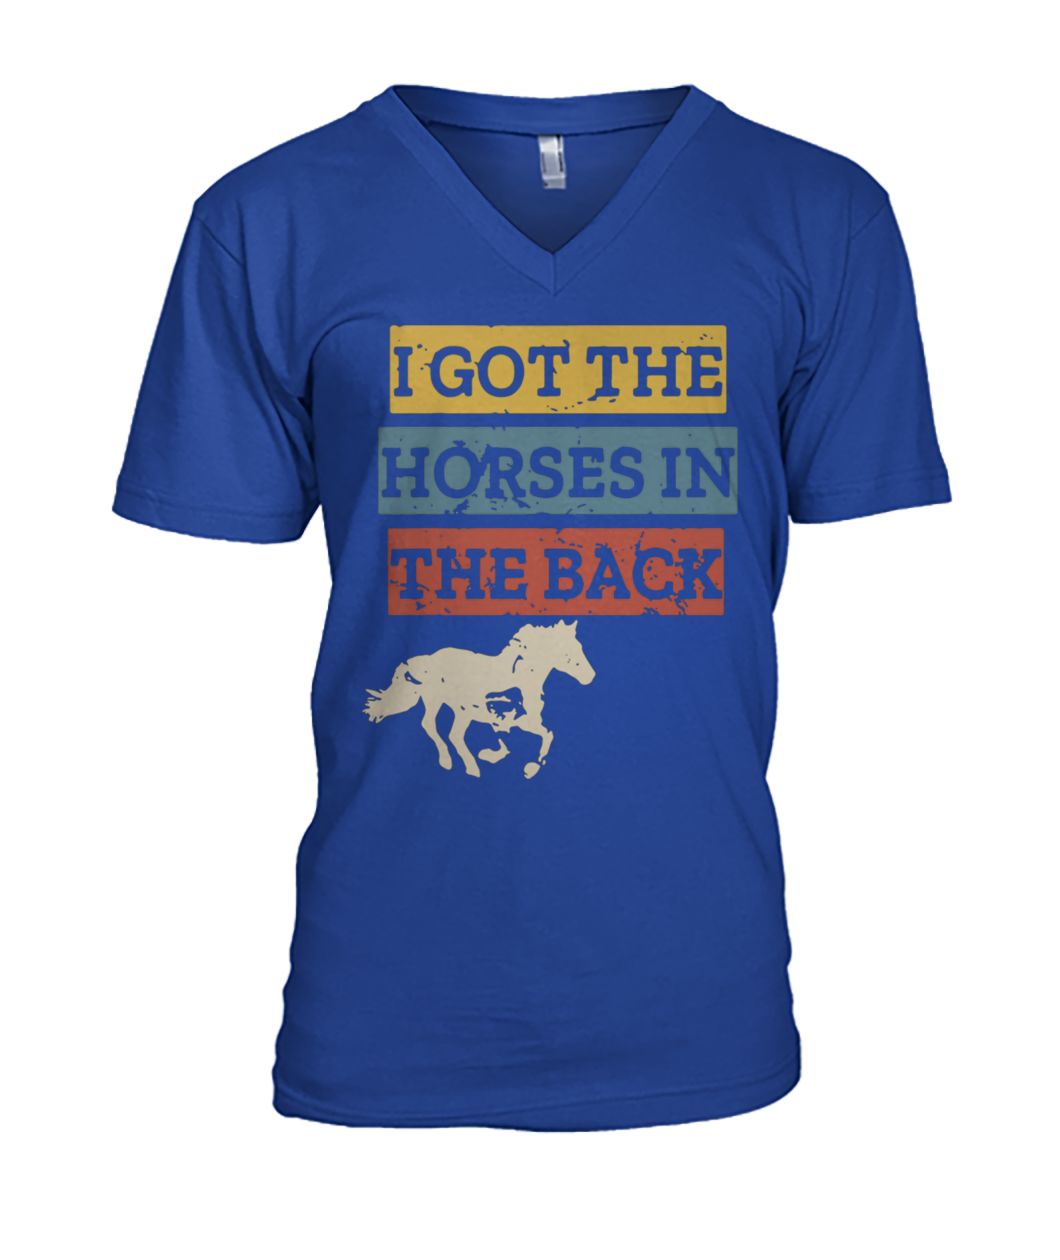 I got the horses in the back mens v-neck